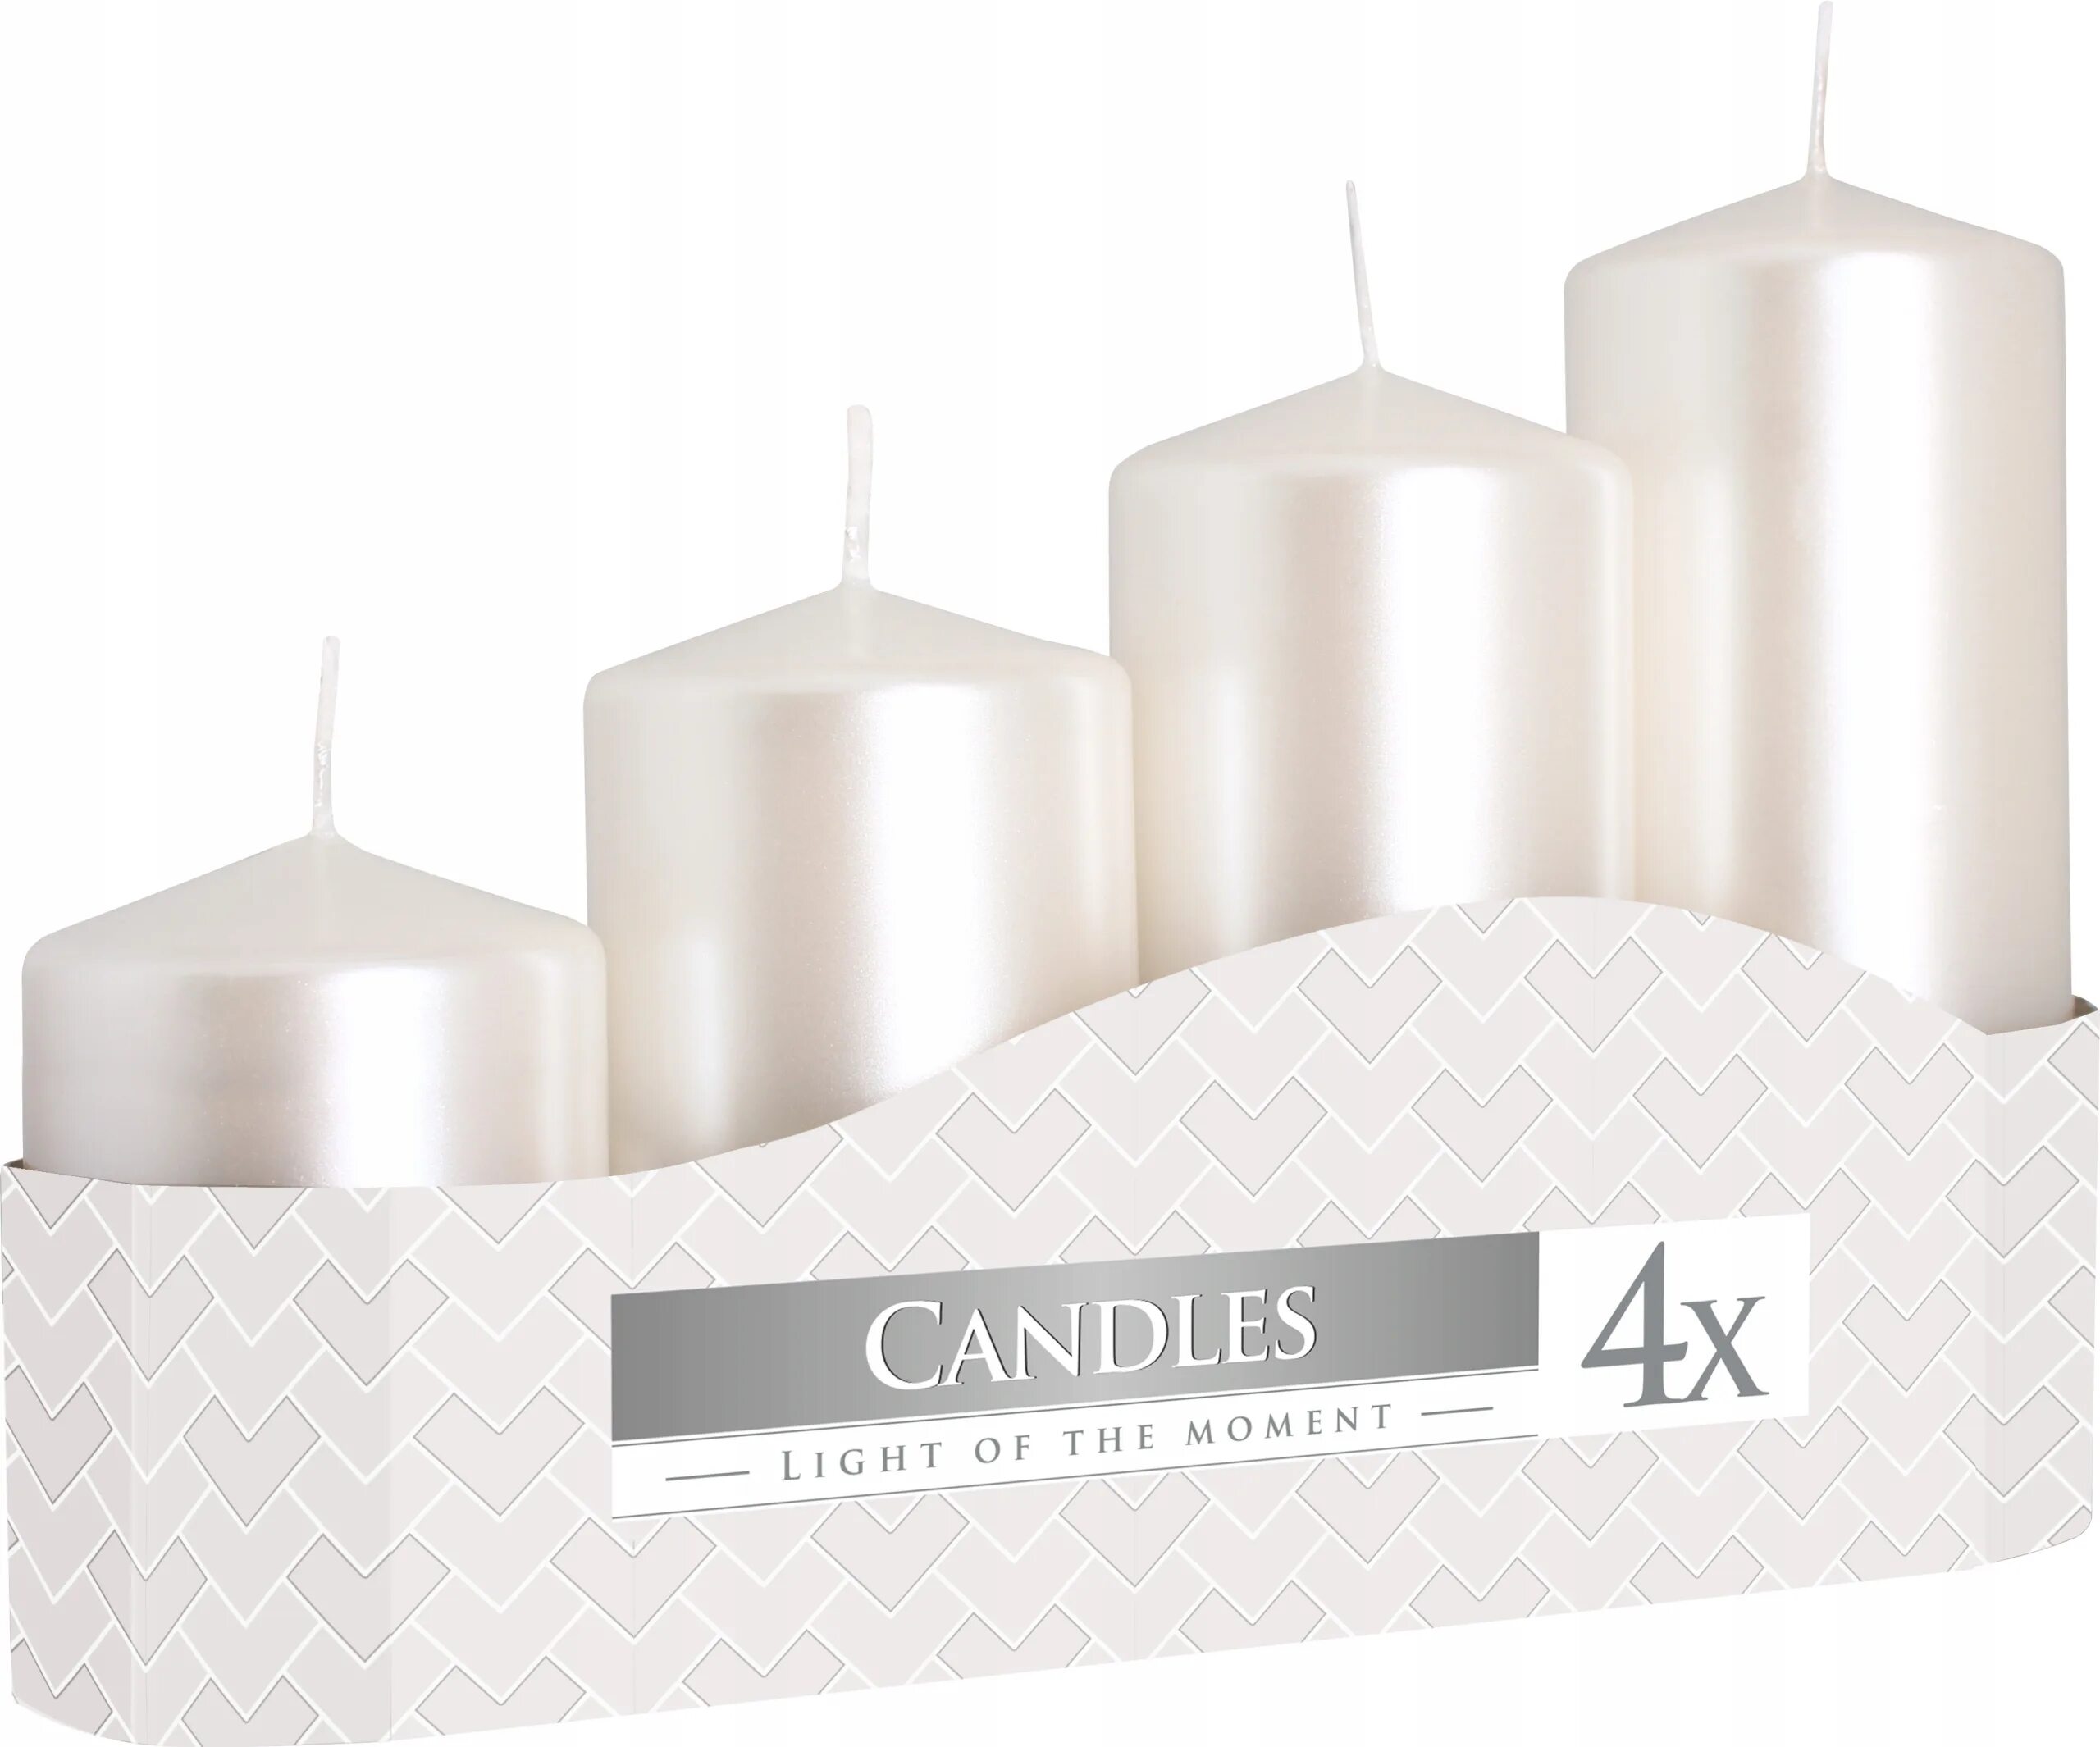 Свечи набор SBN Pillar Candles столбик 3*5см белые 8шт o-2558. Свечи SBN Pillar Candles столбик 4*5см белые 2шт o-2556. Свечи декоративные белые. Столовые свечи.